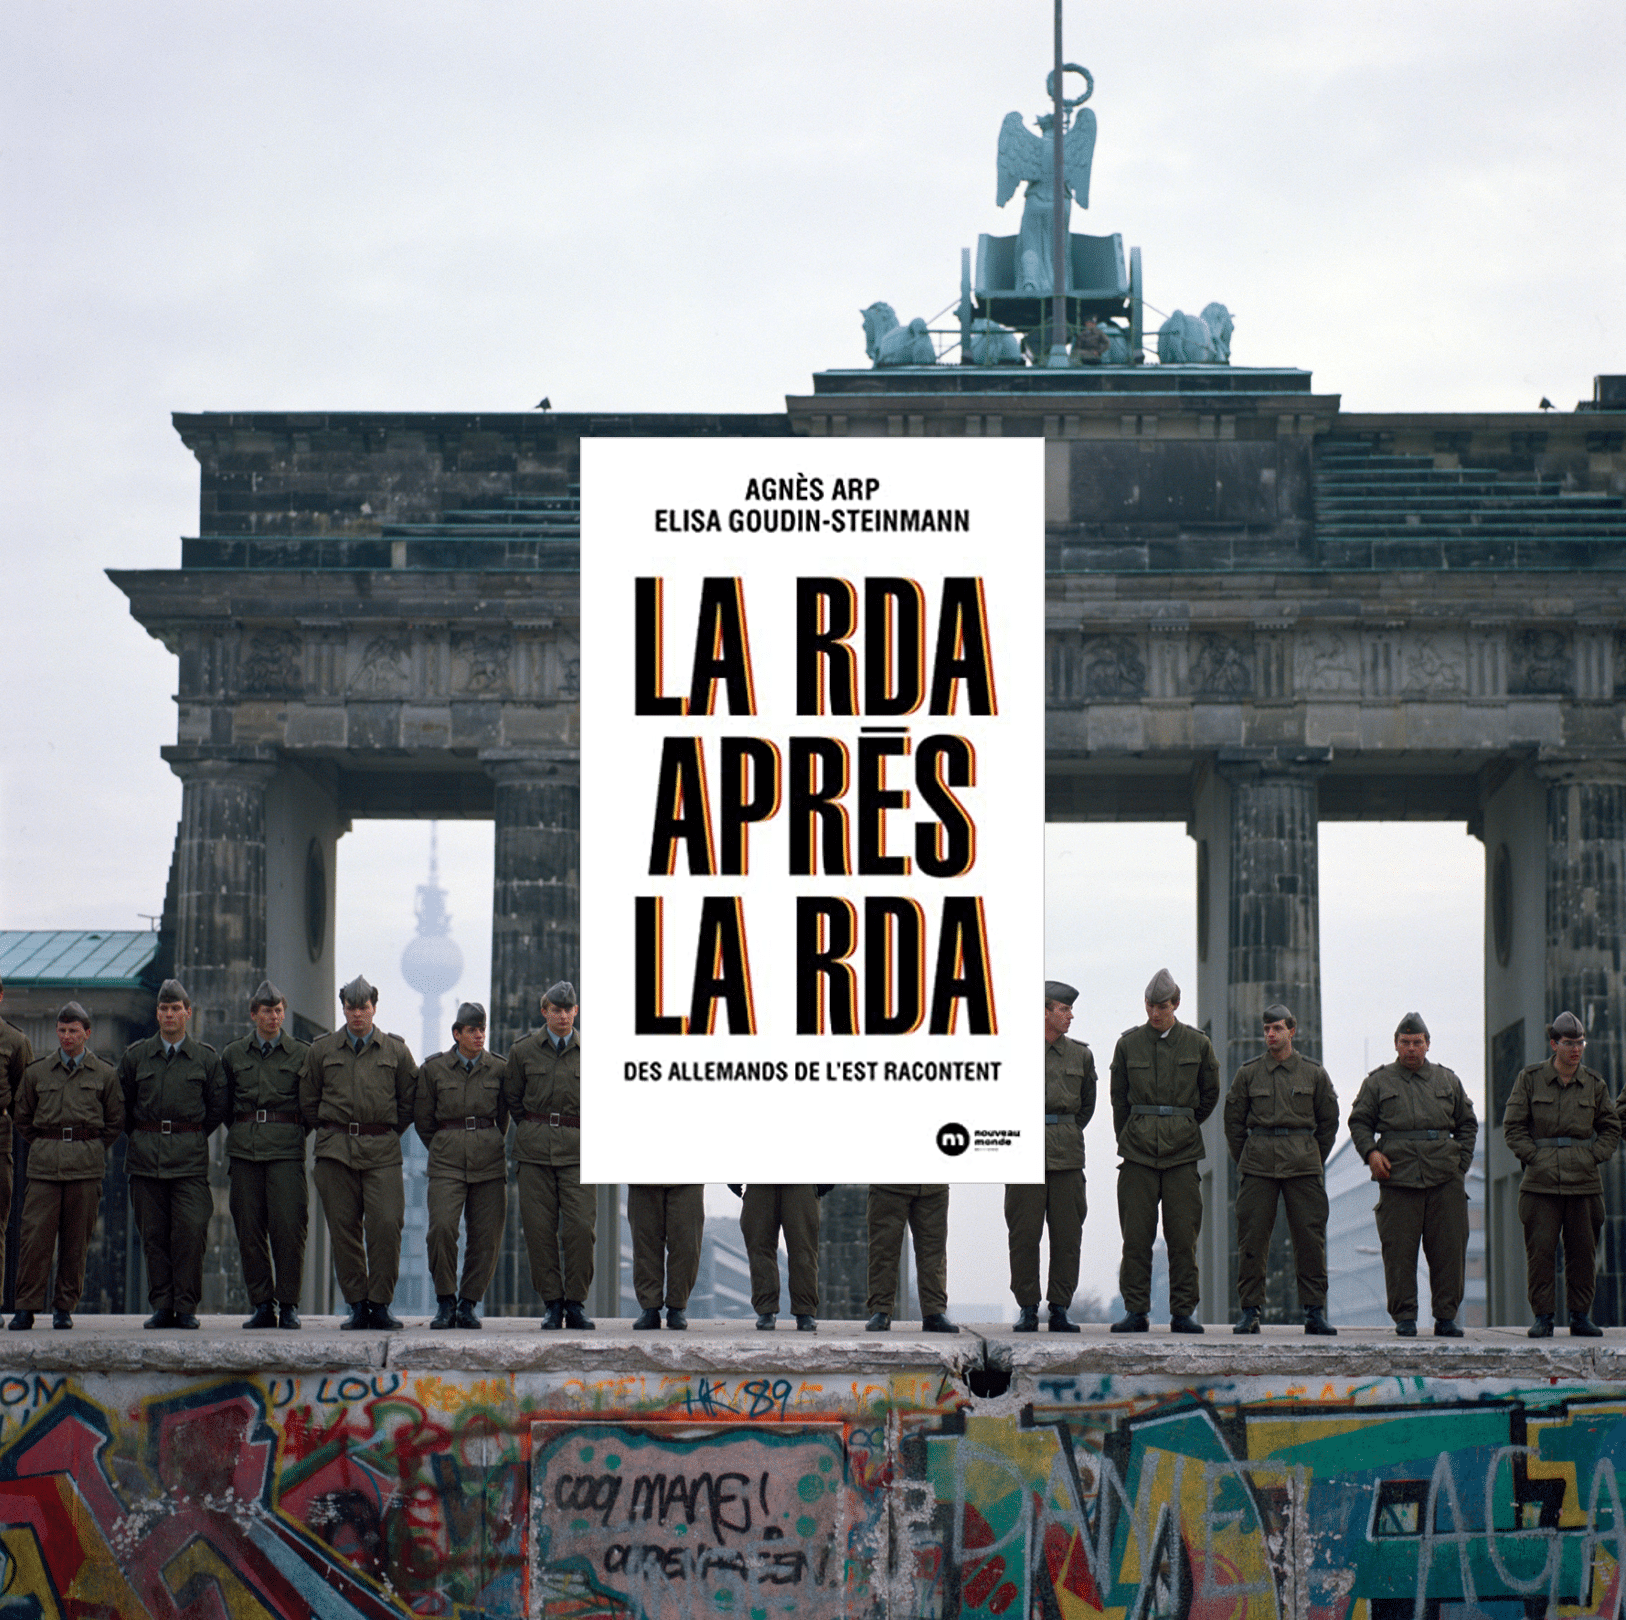 11.11.1989, Berlin, Porte de Brandebourg, le deuxième jour après la chute du Mur, vue de Berlin (Ouest) en direction de Berlin (Est). Les gardes-frontières de l'Armée nationale populaire (NVA) ont évacué le mur par des moyens pacifiques et le sécurisent debout sur le mur (c) Sipa 55002061_000001